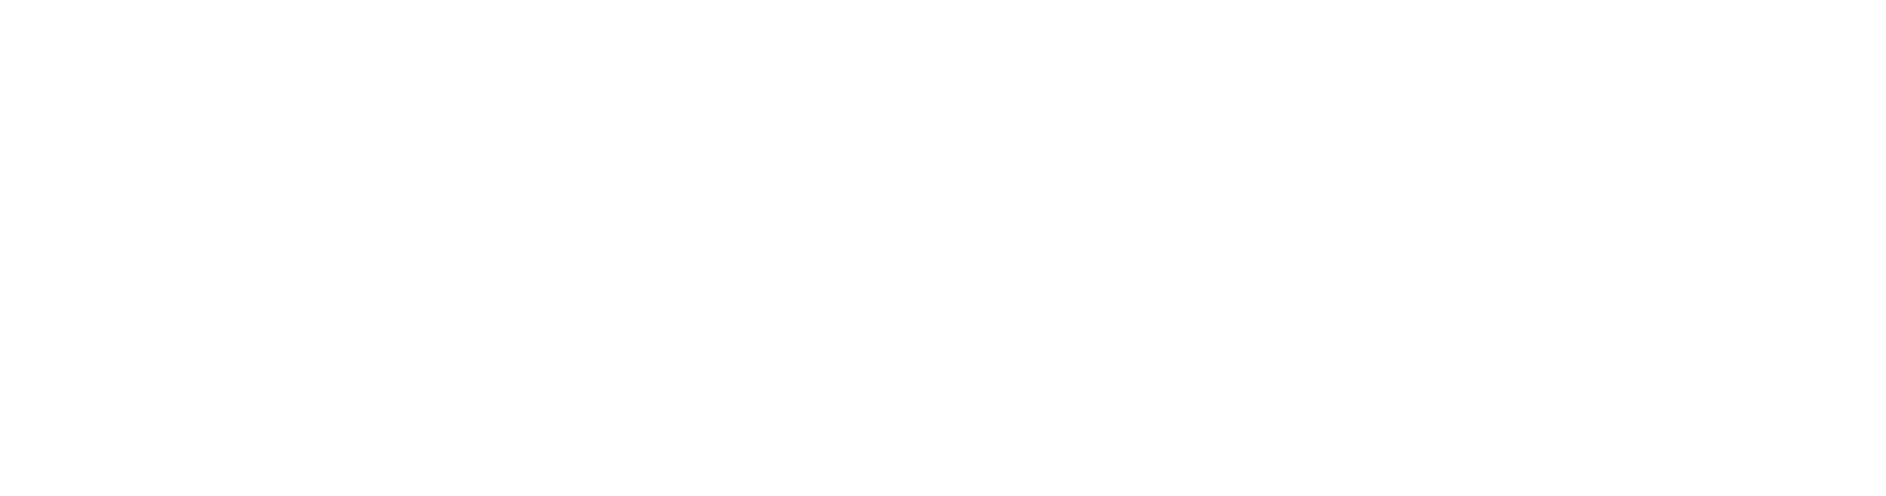 (c) Servsul.com.br